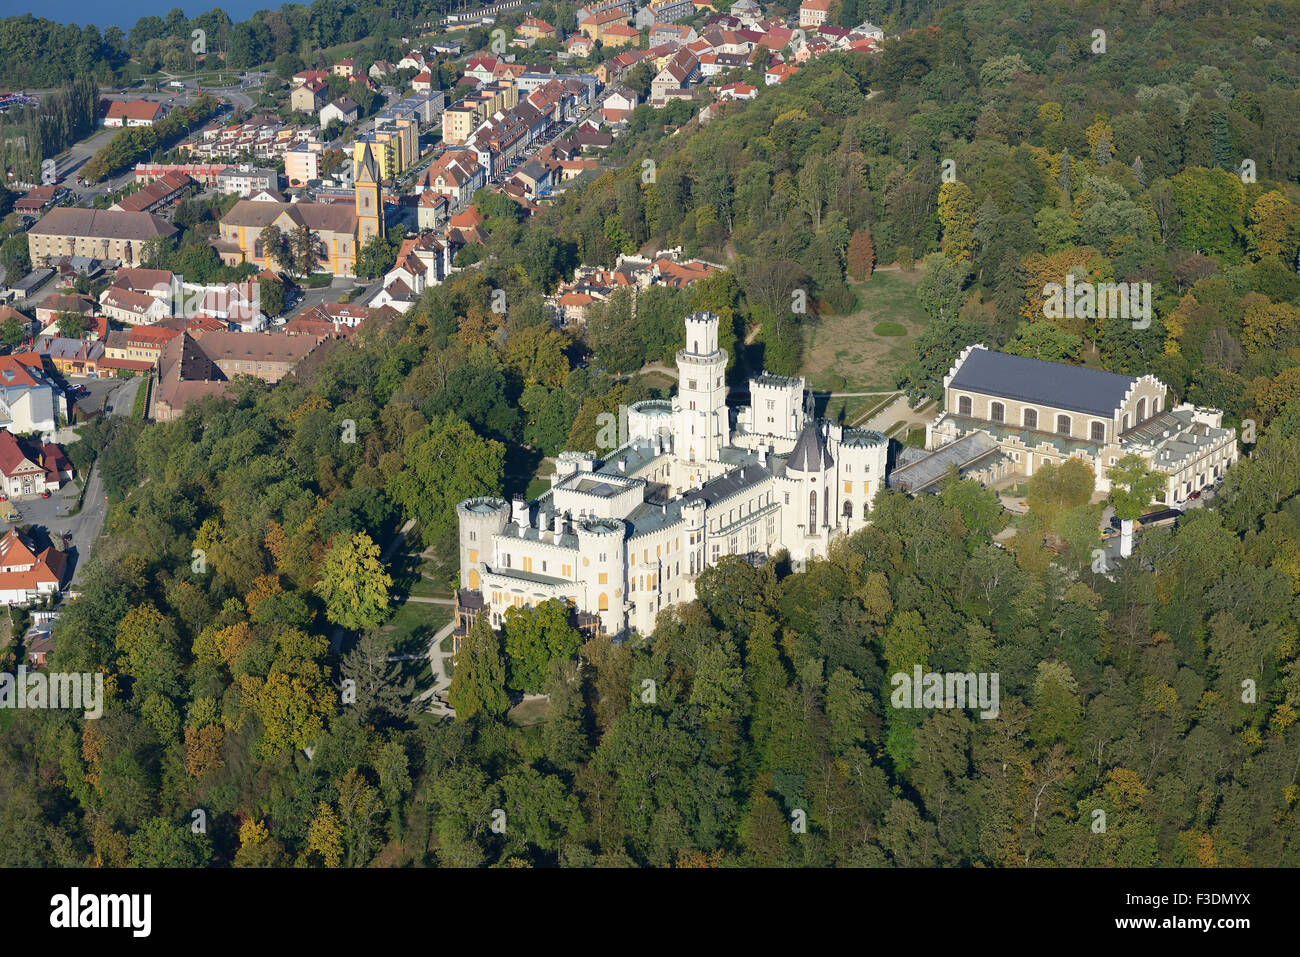 LUFTAUFNAHME. Burg Hluboká mit Blick auf die mittelalterliche Stadt Hluboká nad Vltavou. Böhmen, Tschechische Republik. Stockfoto